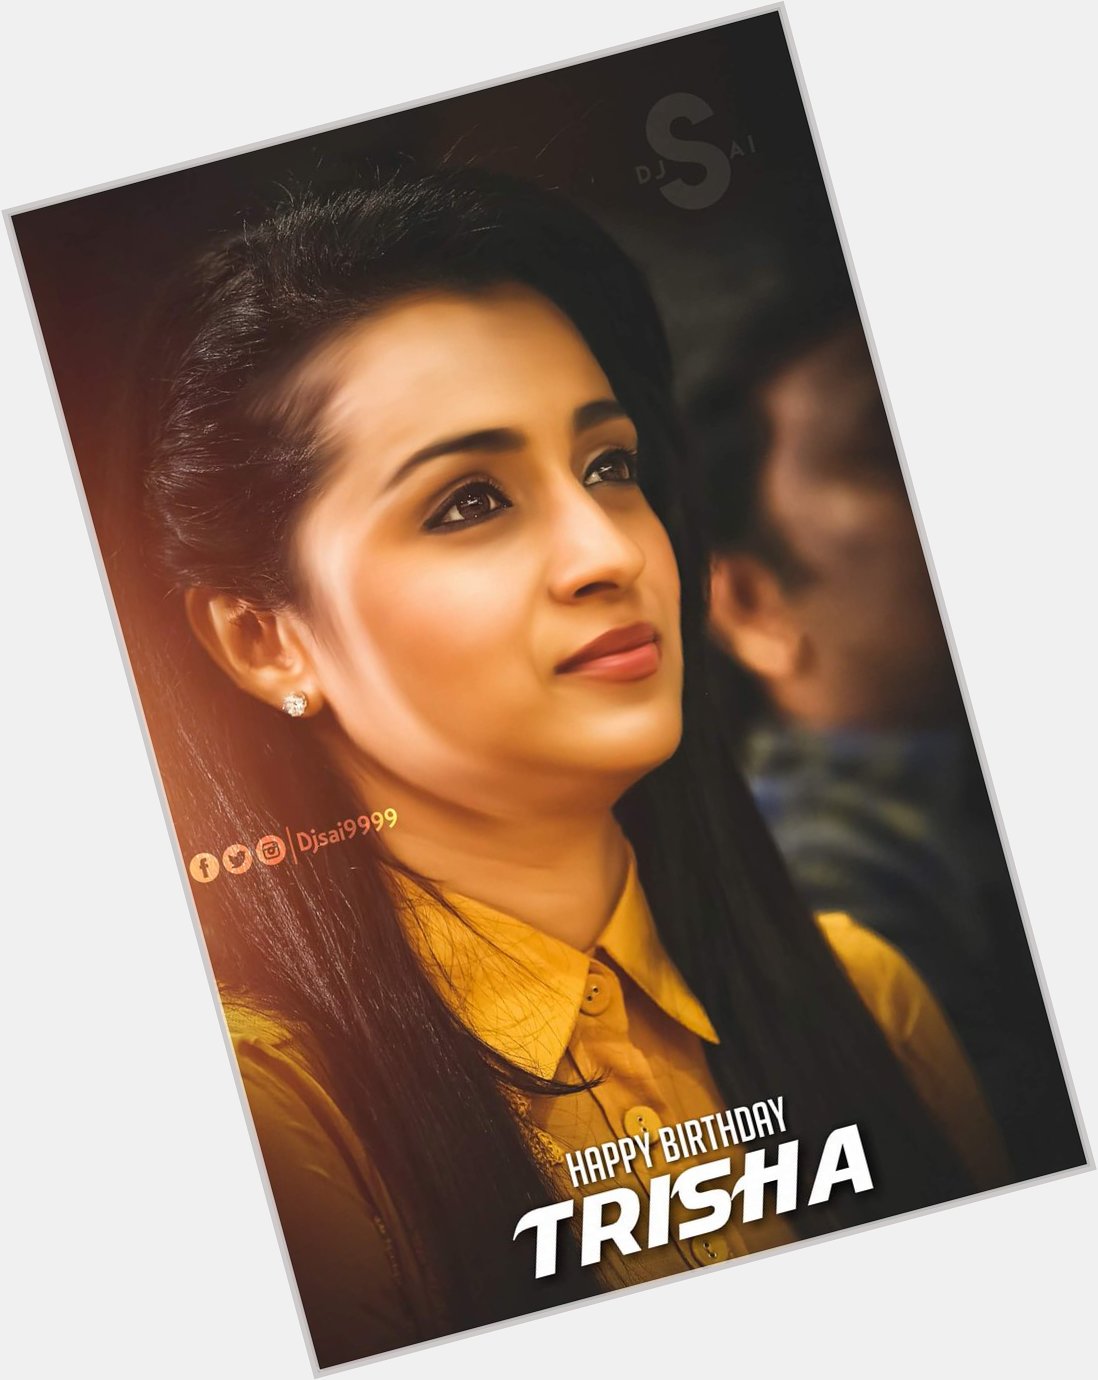 Happy Birthday 

Trisha Krishnan

Trish 